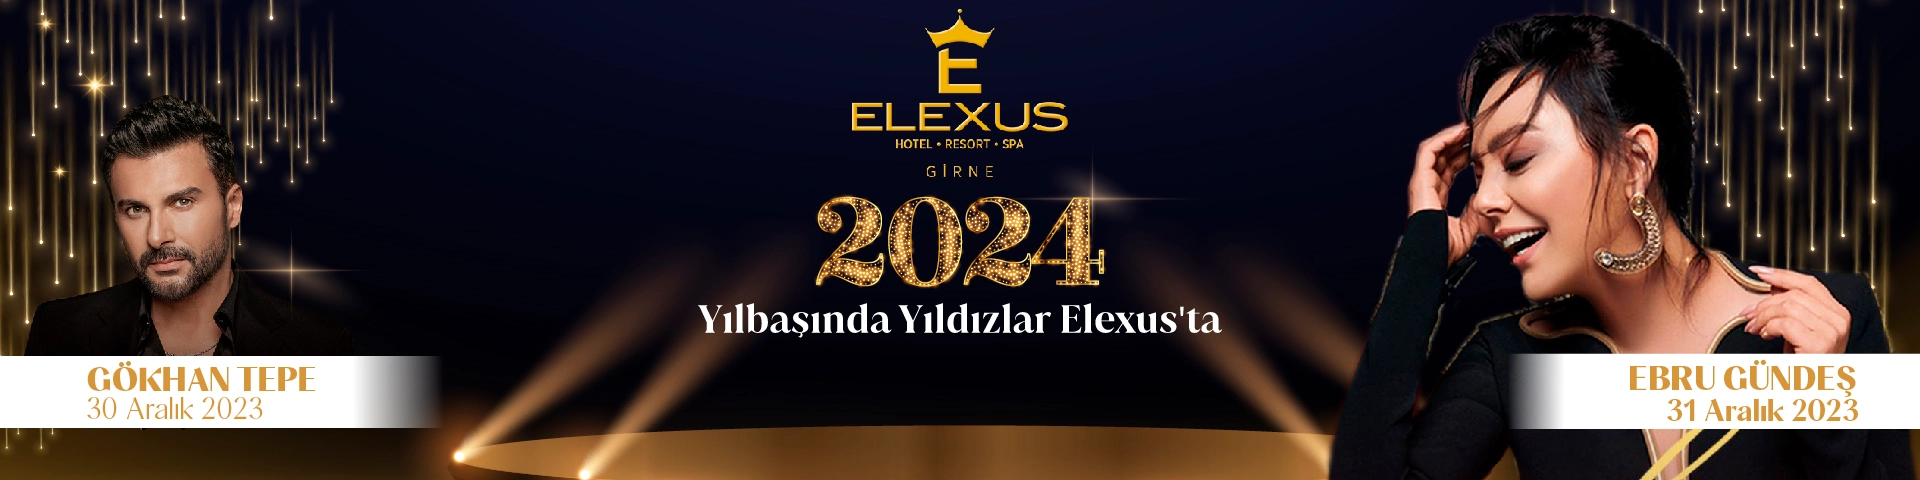 Elexus Hotel & Resort & Casino'da Yılbaşı